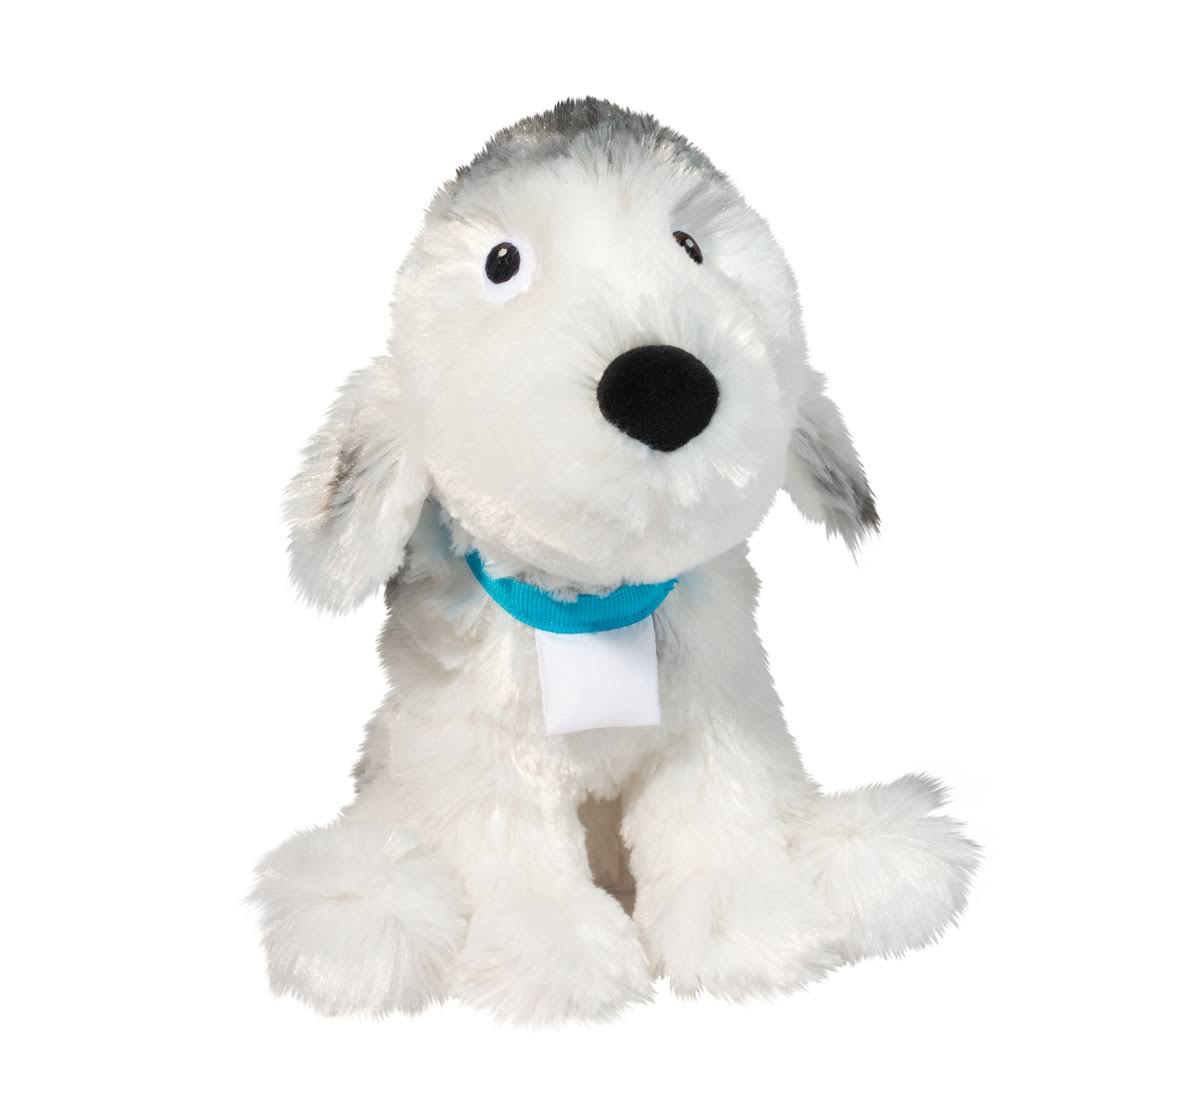 Douglas Cuddle Toy - Rocket Dog - Plush Stuffed Animal Cuddle Toy (7900)